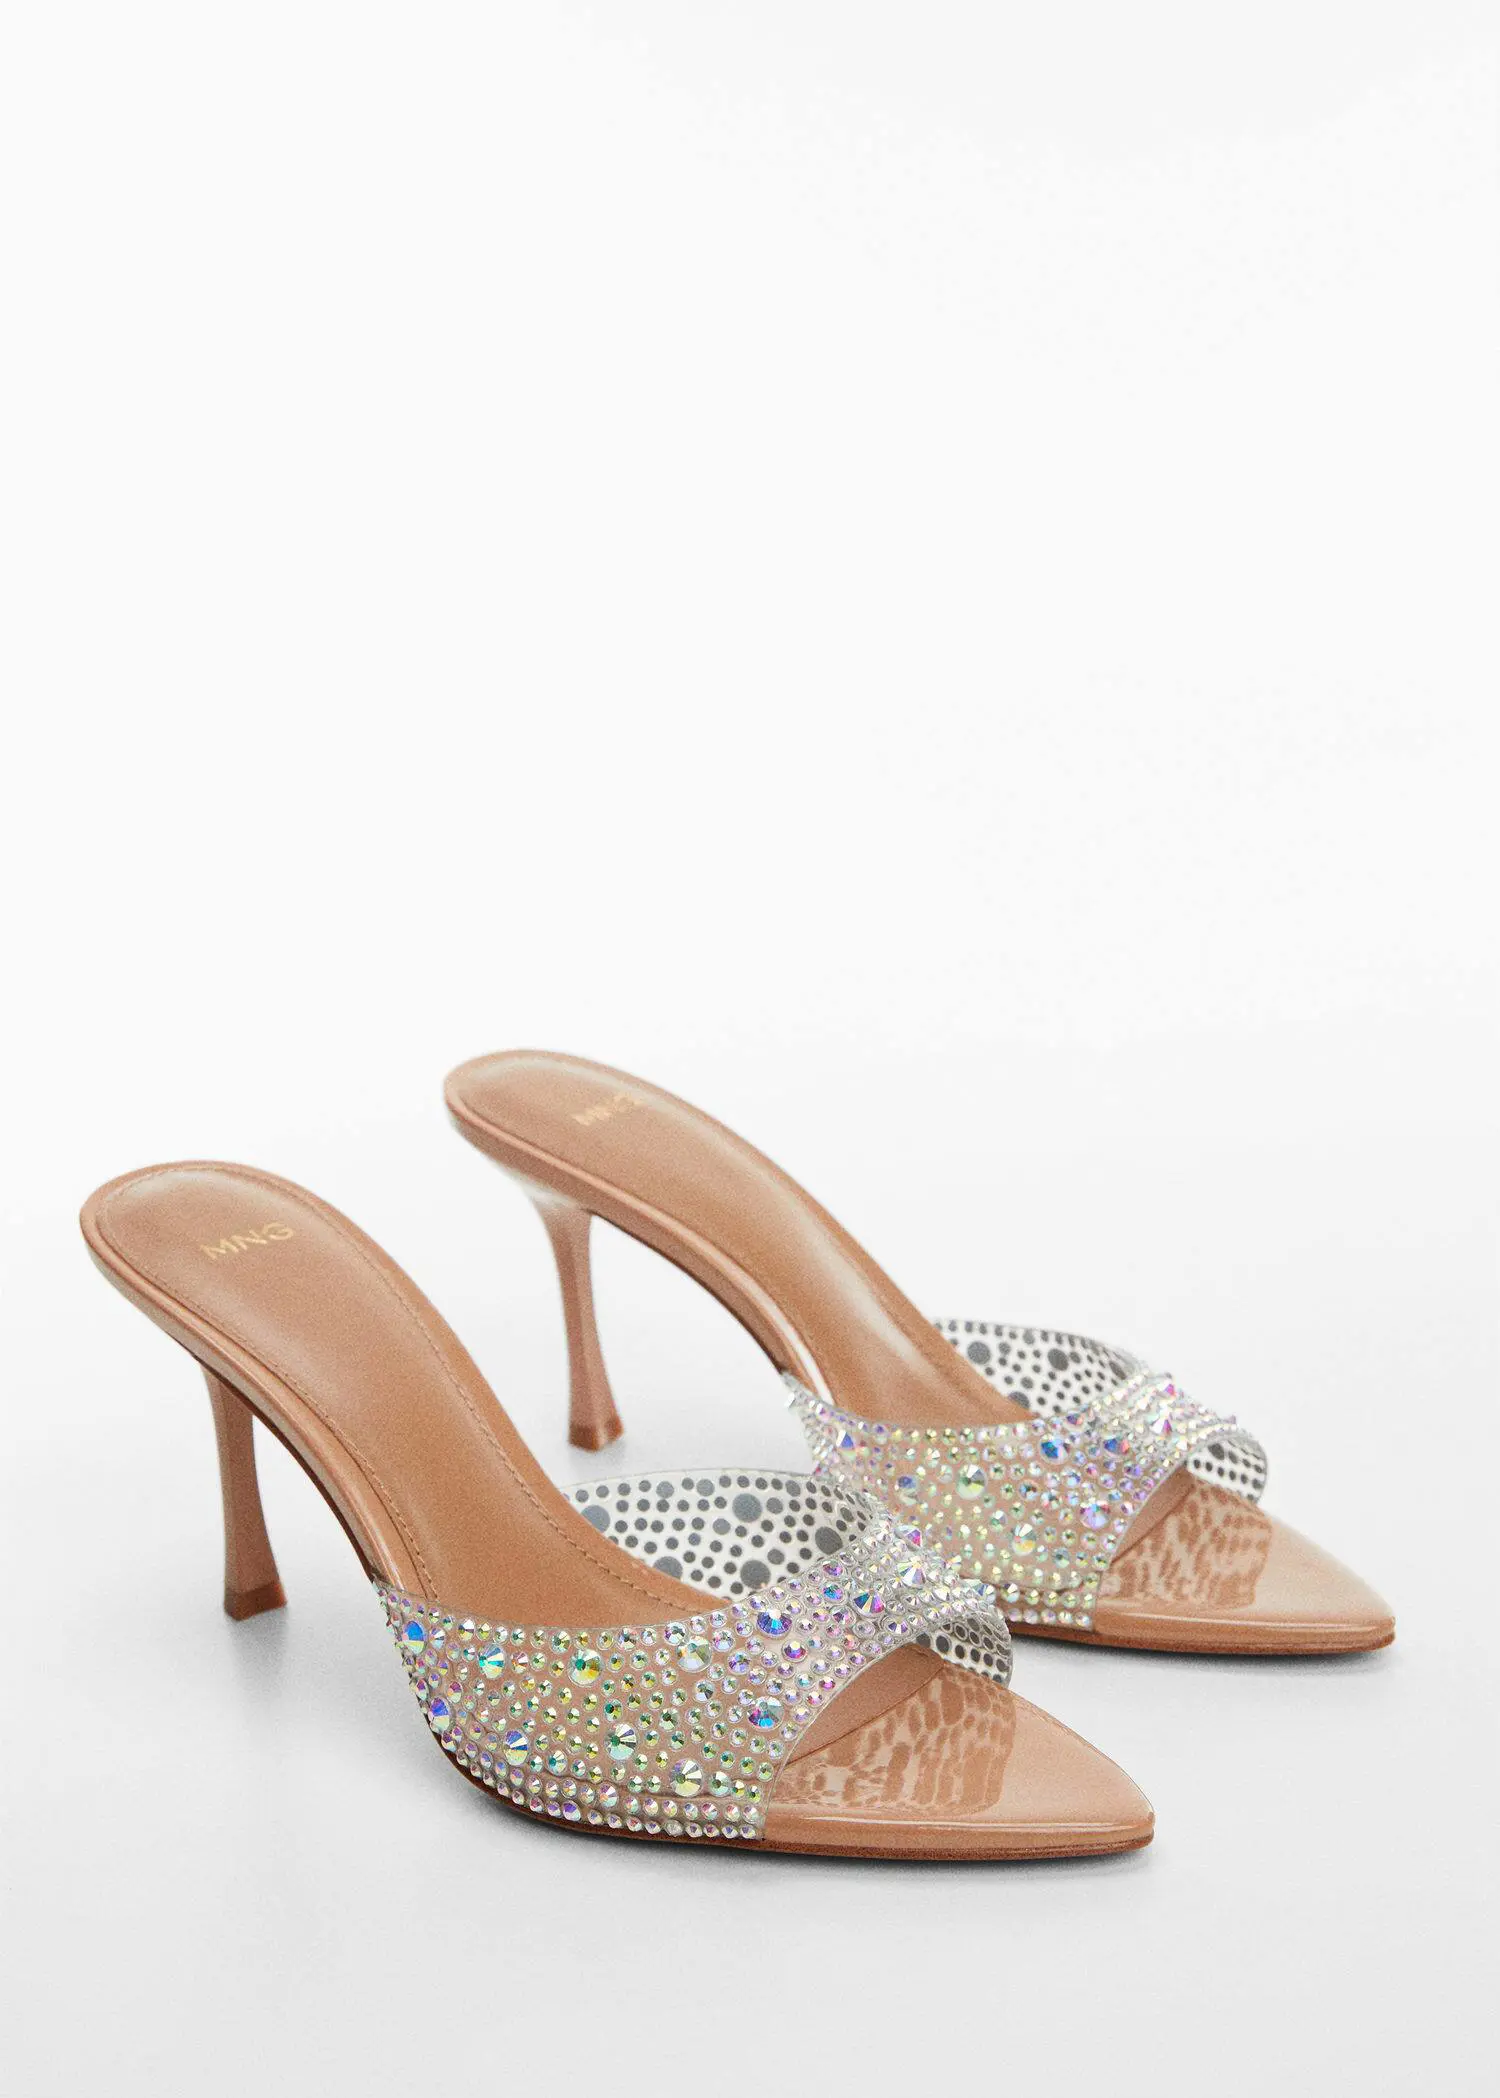 Mango Glitter high-heeled sandals. 3